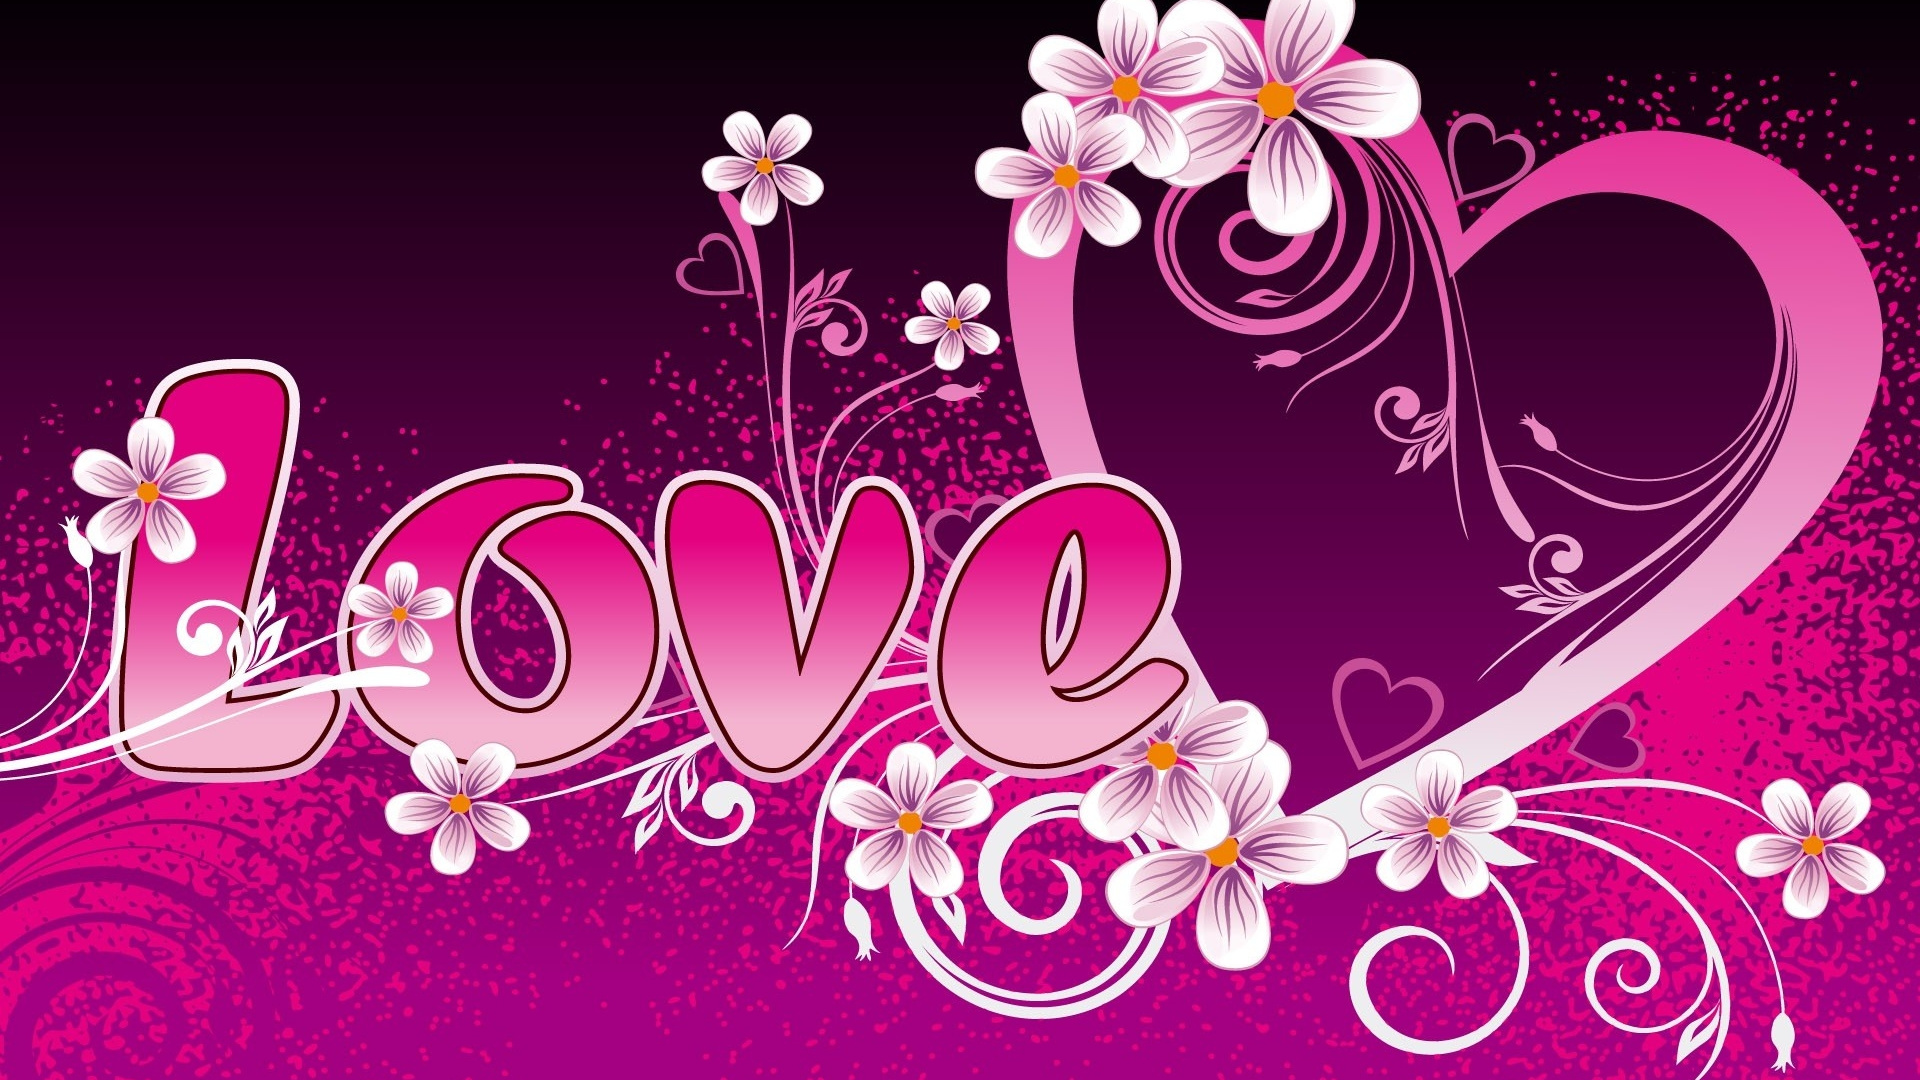 心脏, 文本, 粉红色, 图形设计, 爱情 壁纸 1920x1080 允许